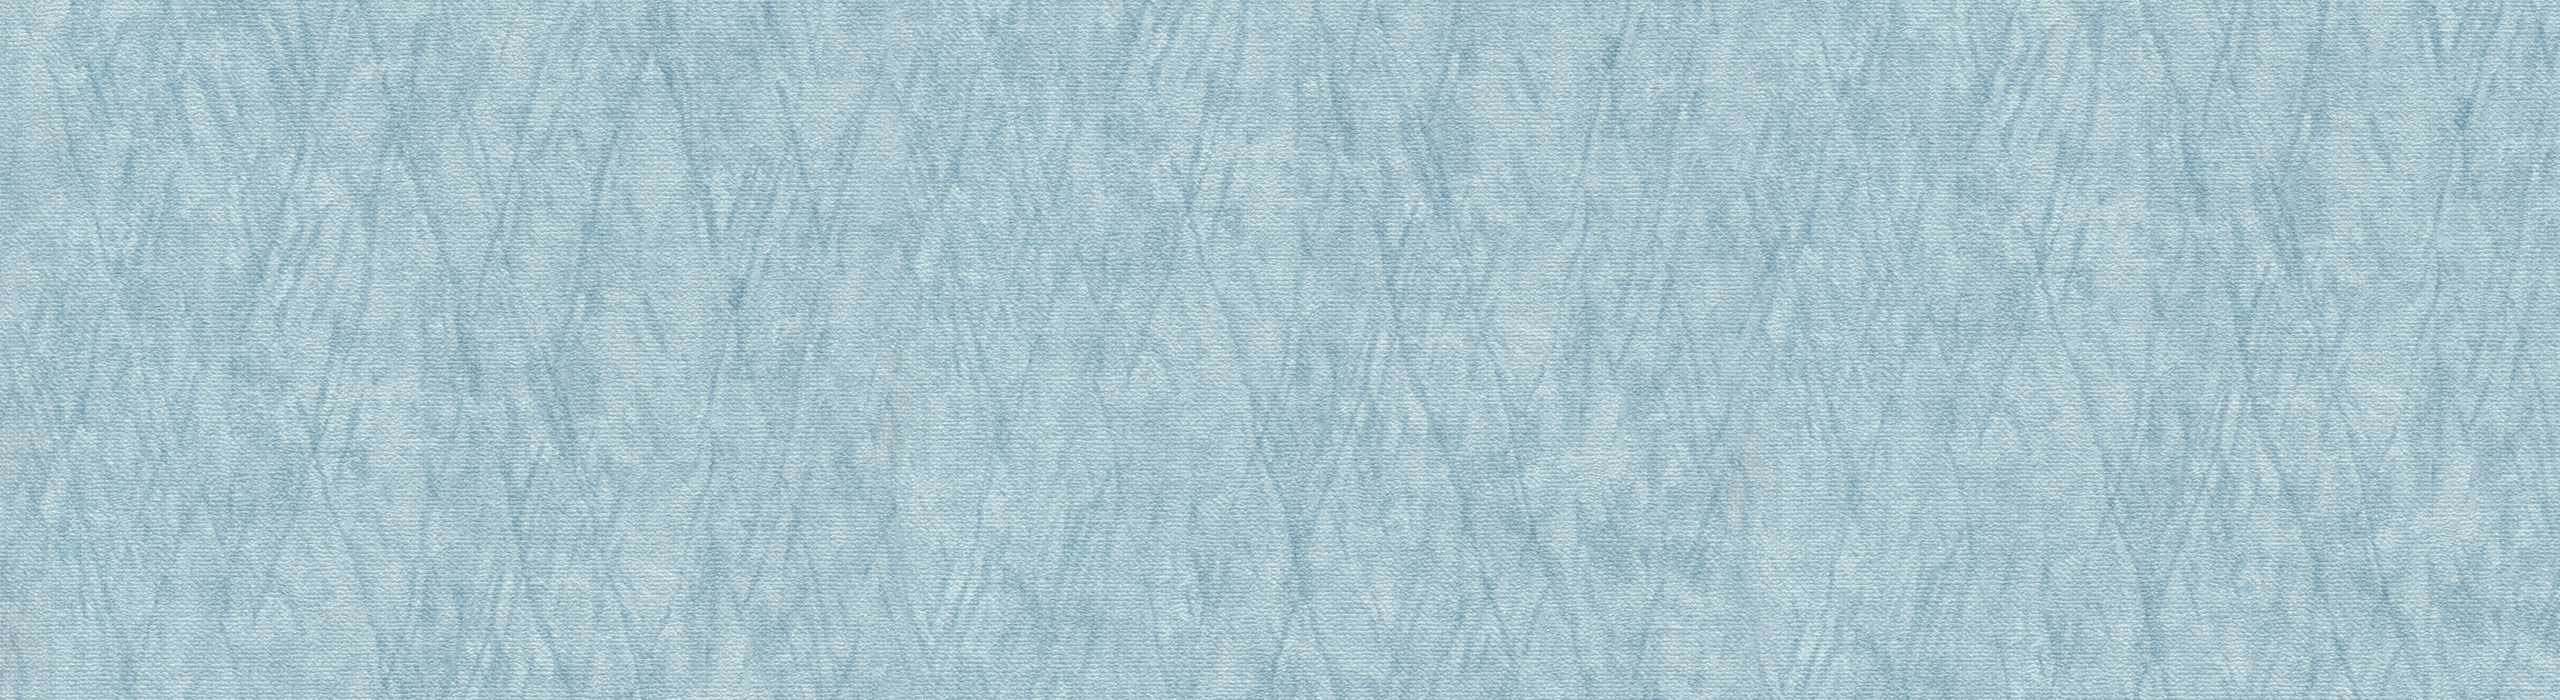 картинка 88284-3 Veluce 2018 Обои виниловые на бумажной основе 1.06*15.6 рисунок ткань цвет голубой